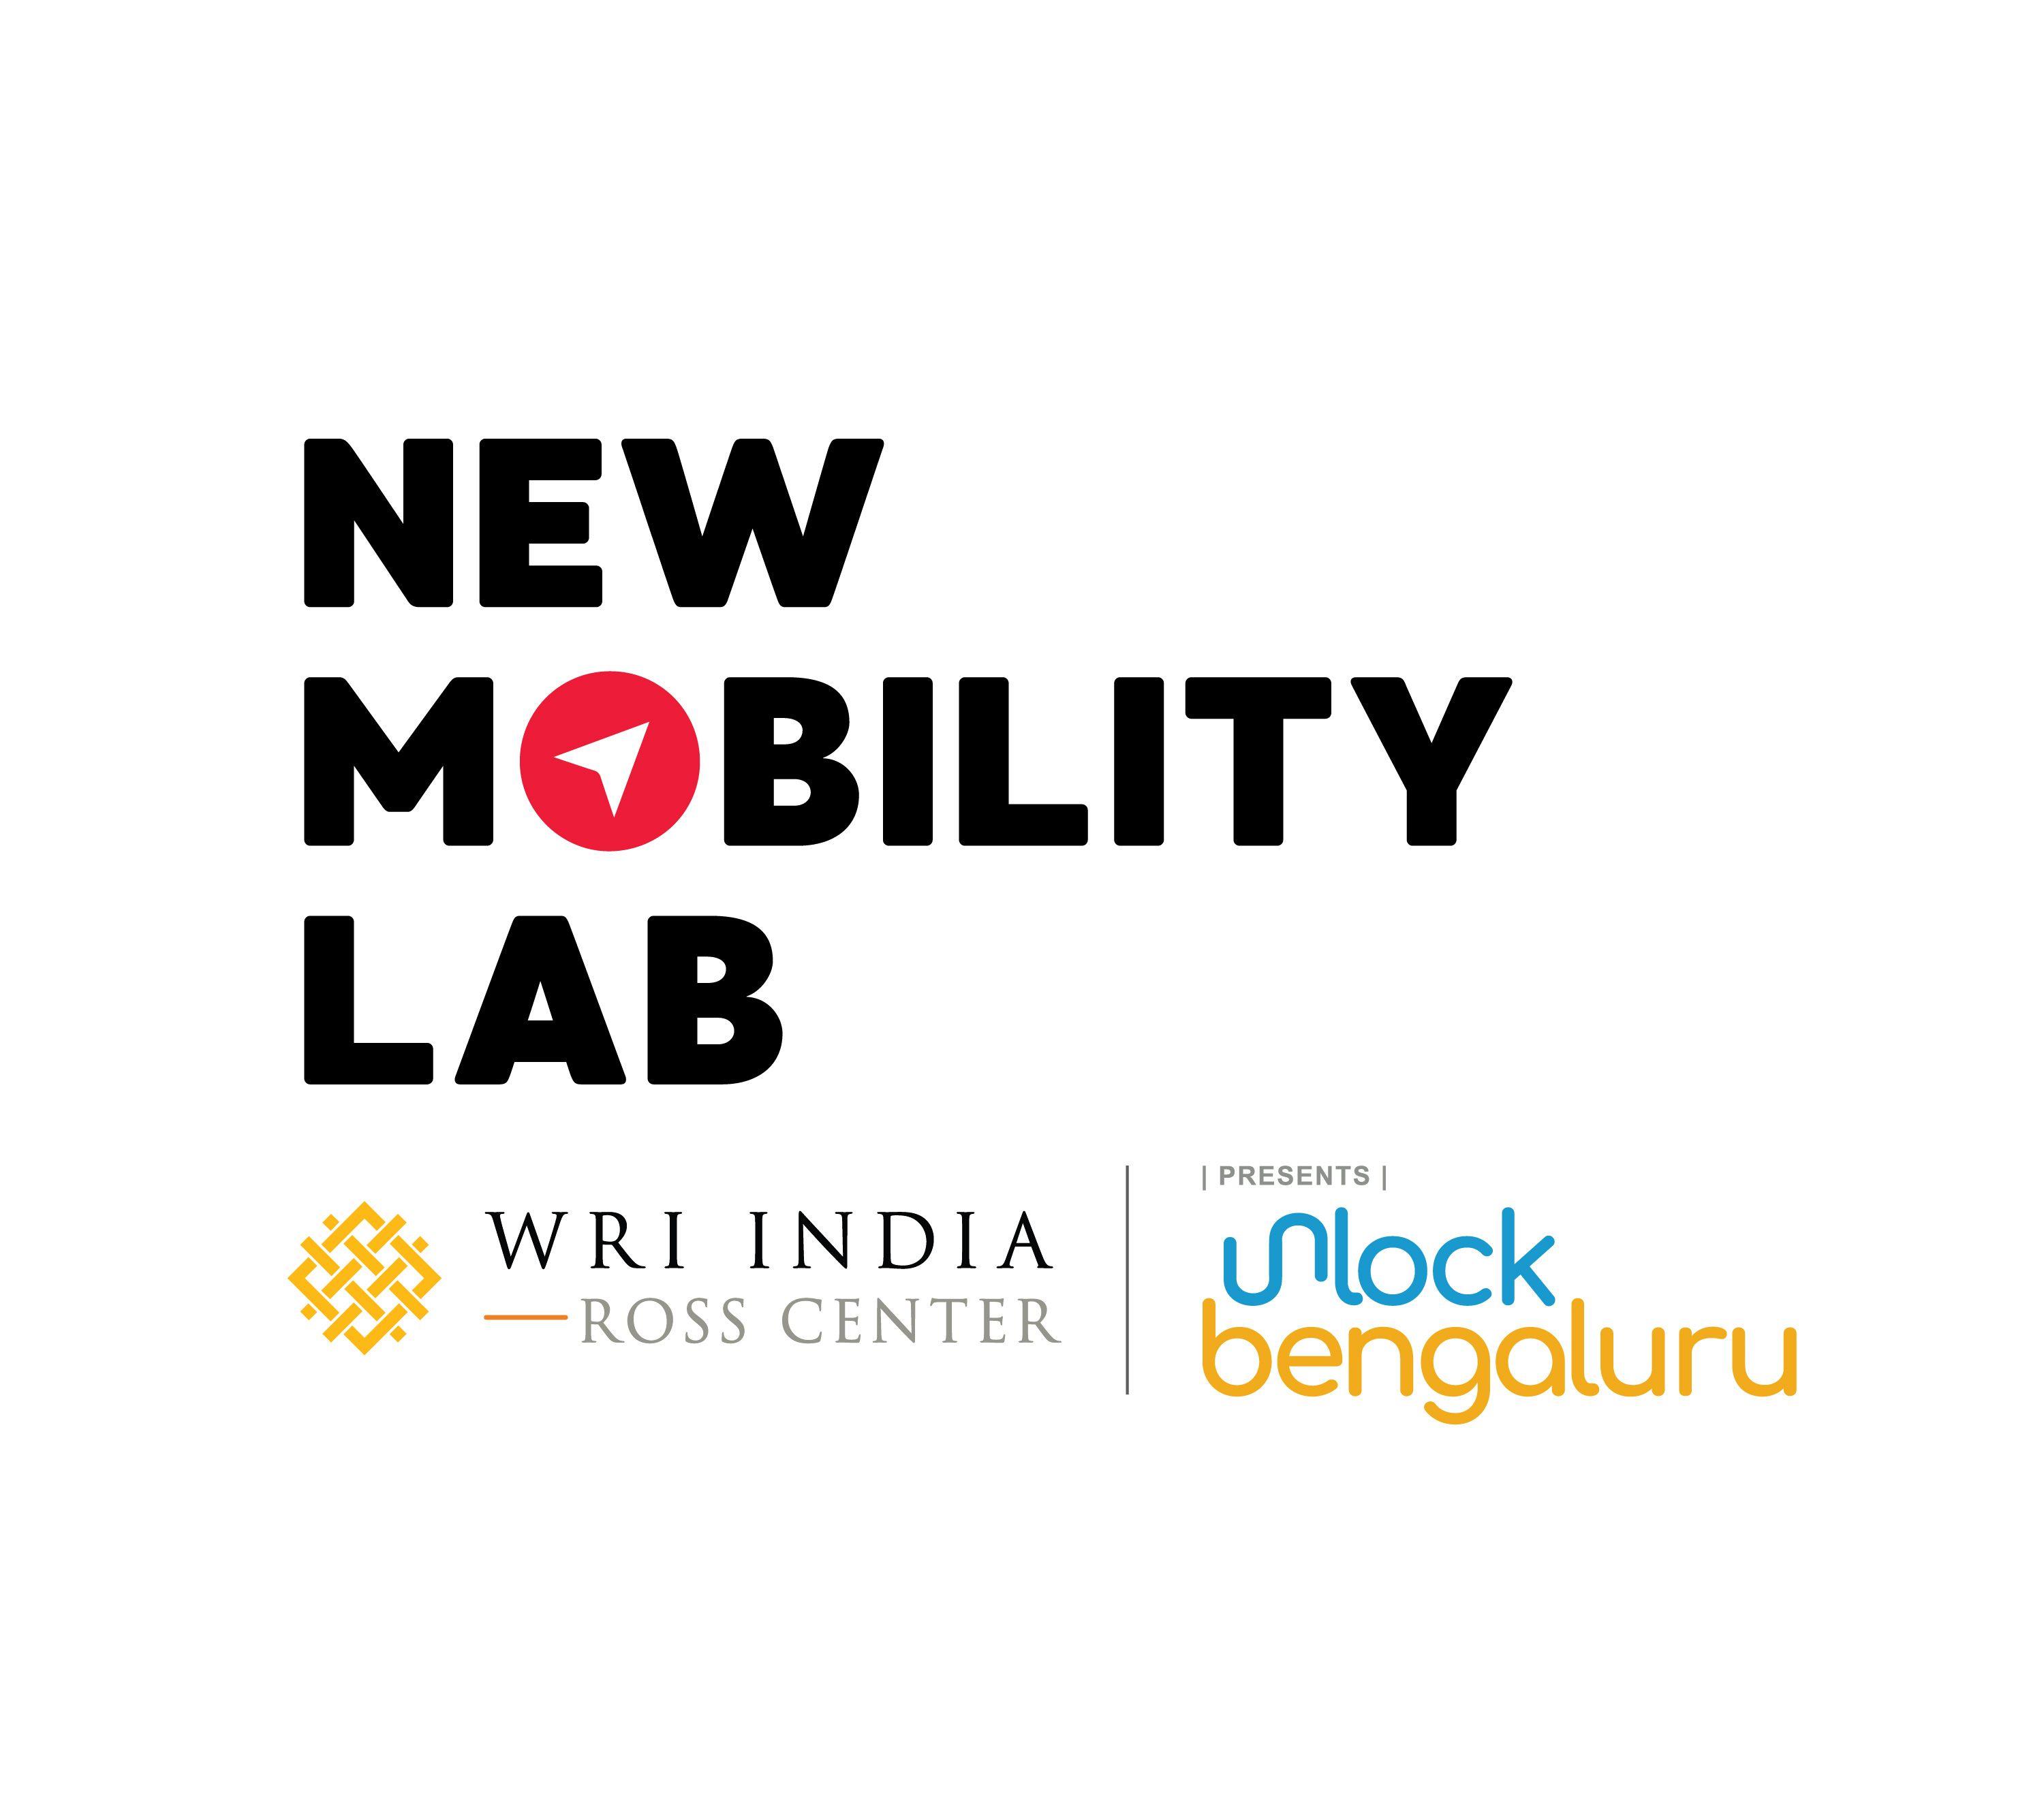 WRI Logo - The New Mobility Lab | WRI INDIA